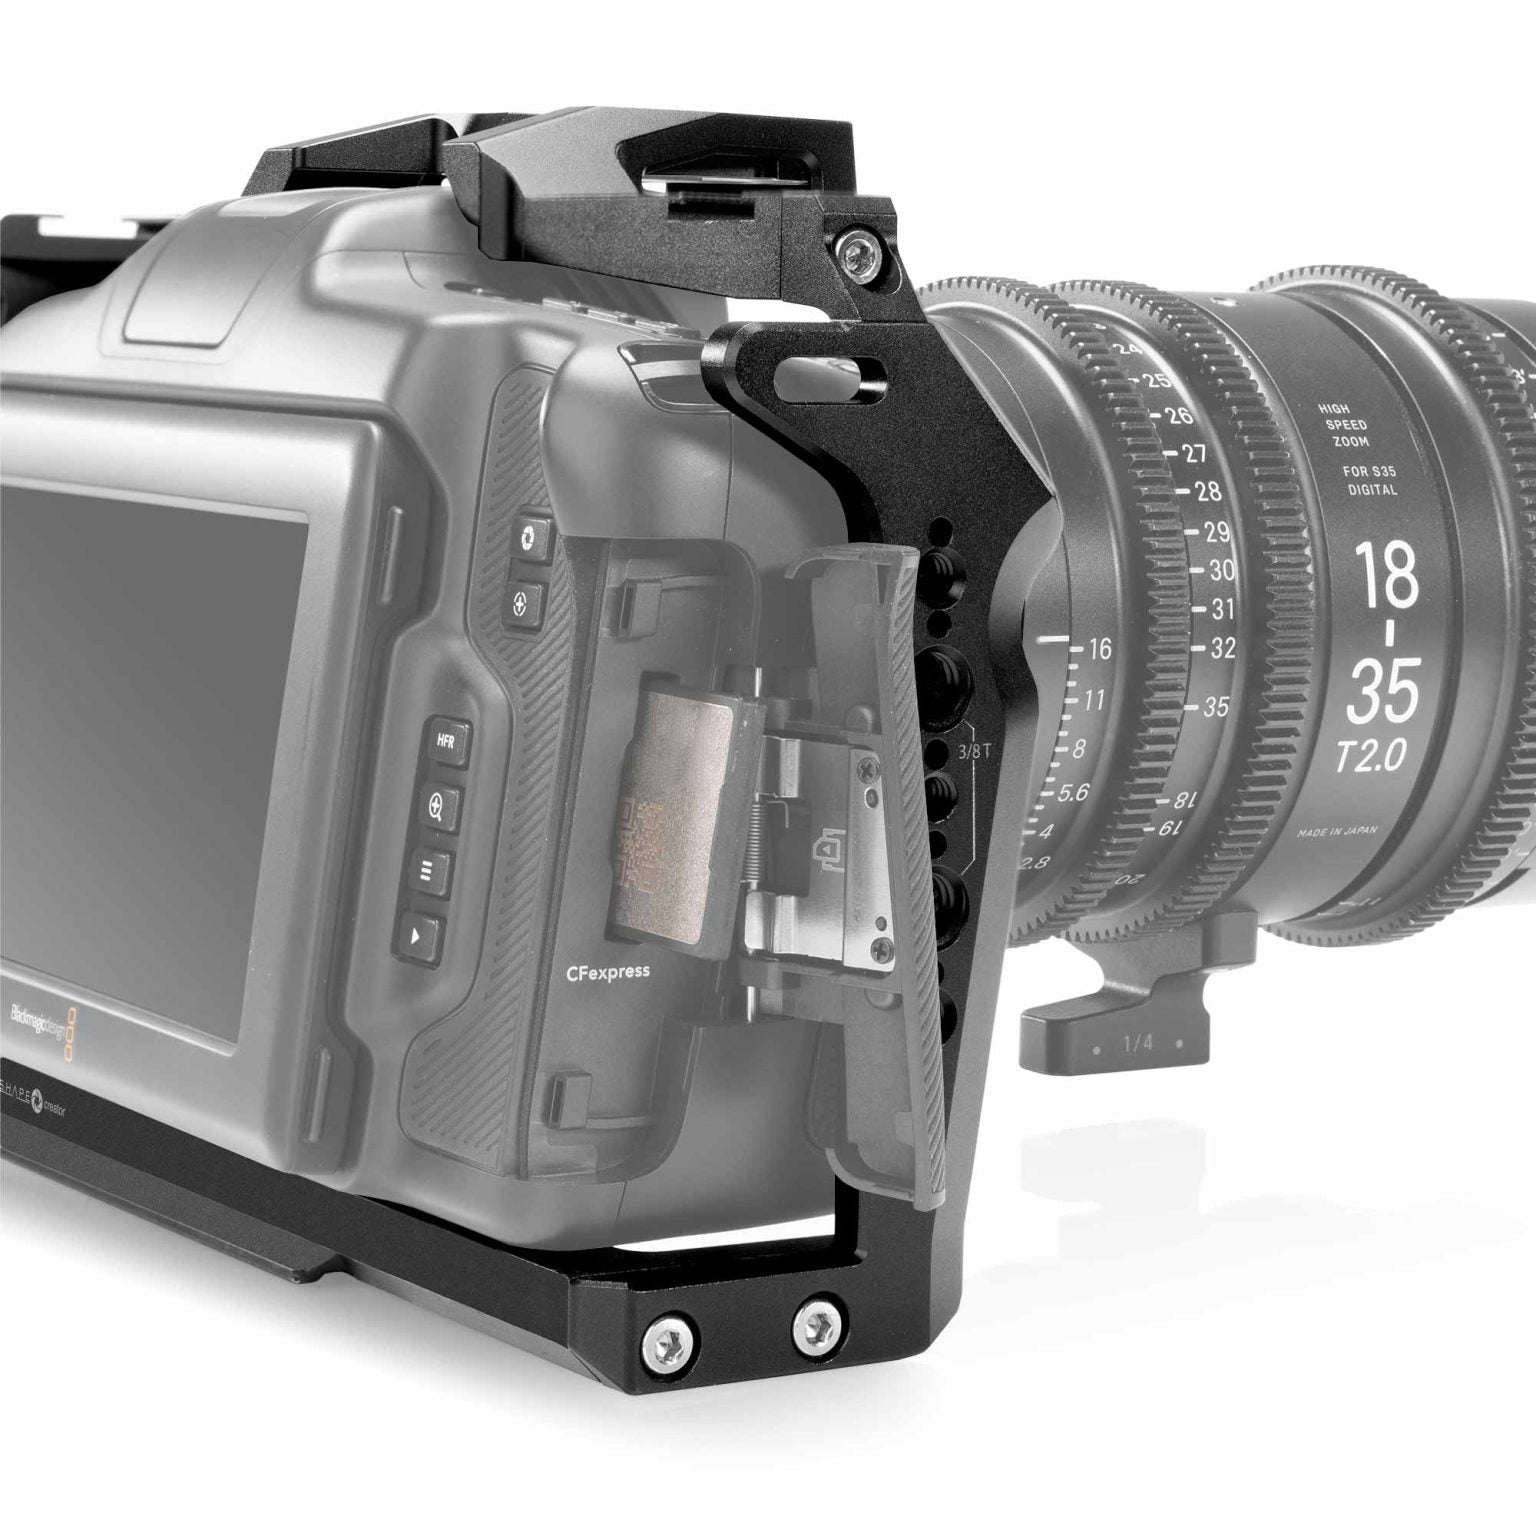 SHAPE Shoulder Mount for Blackmagic Cinema Camera 6K/6K PRO/6K G2